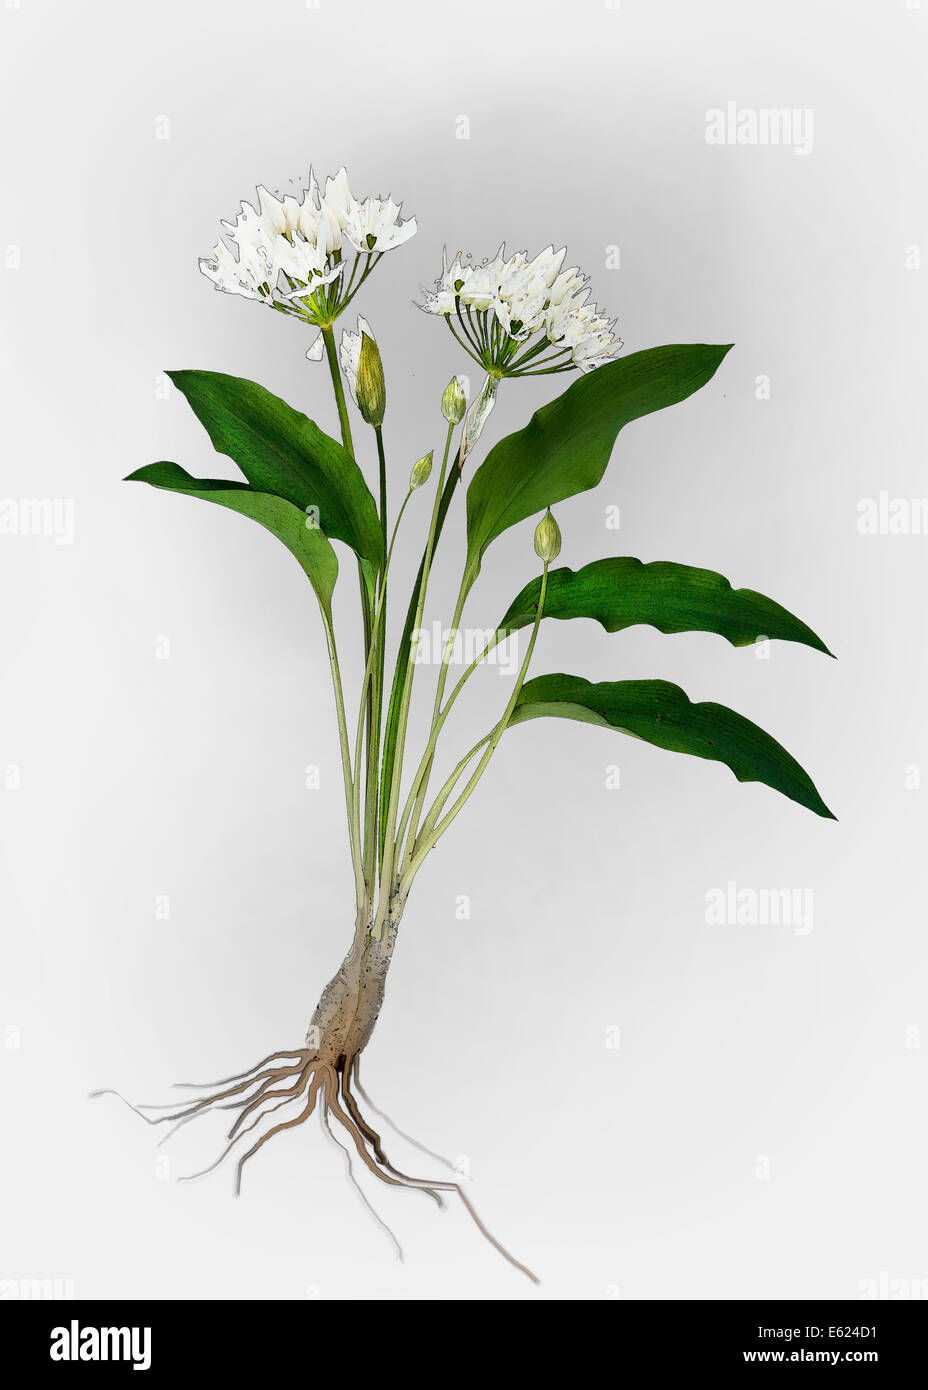 Ramsons or Wild Garlic (Allium ursinum), illustration Stock Photo